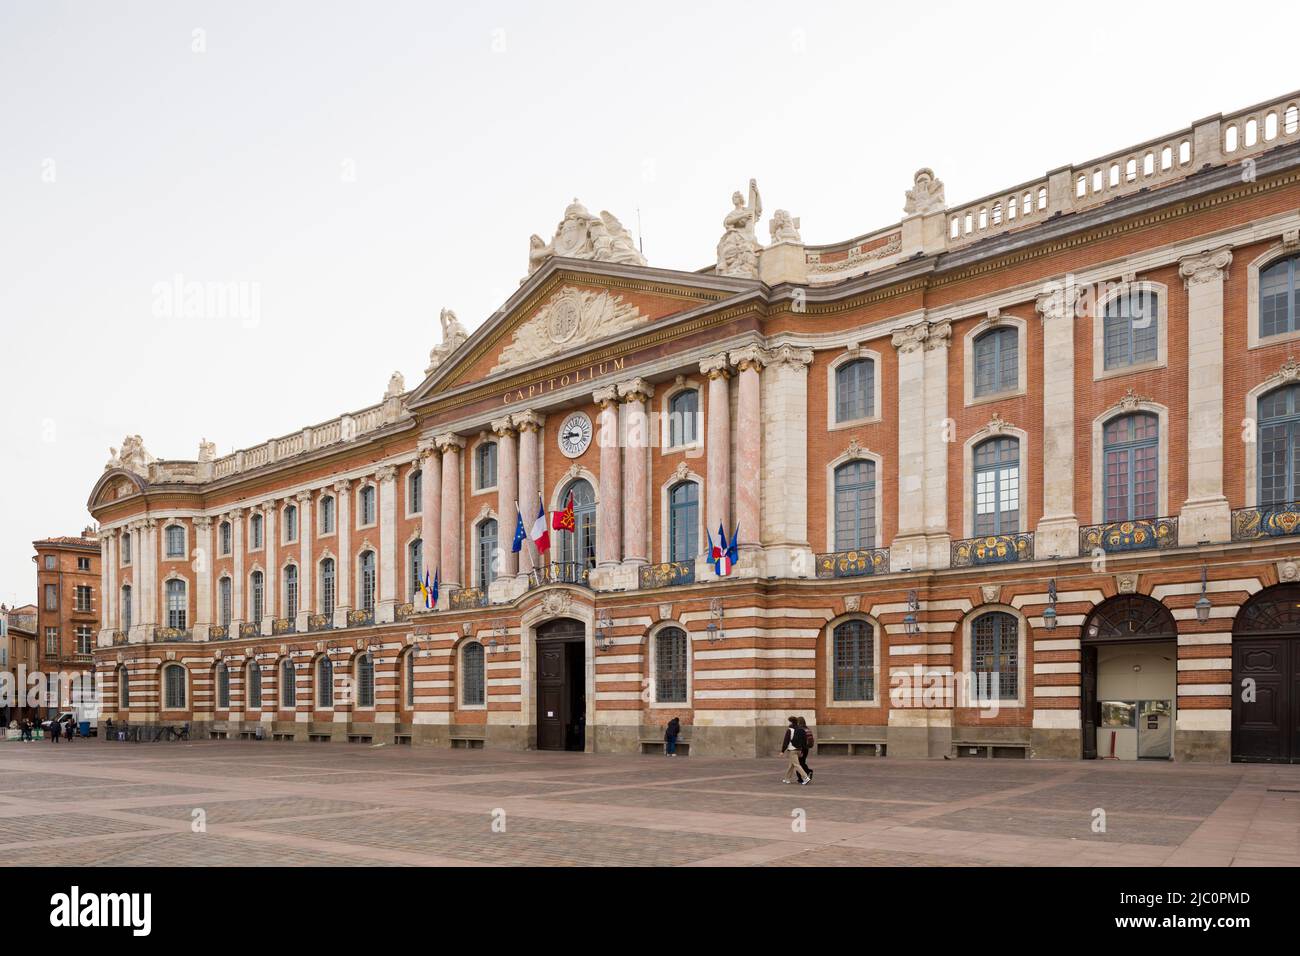 Le Capitole de Toulouse (Hôtel de ville ou Hôtel de ville), France. Façade principale de 1750 par Guillaume Cammas. Banque D'Images